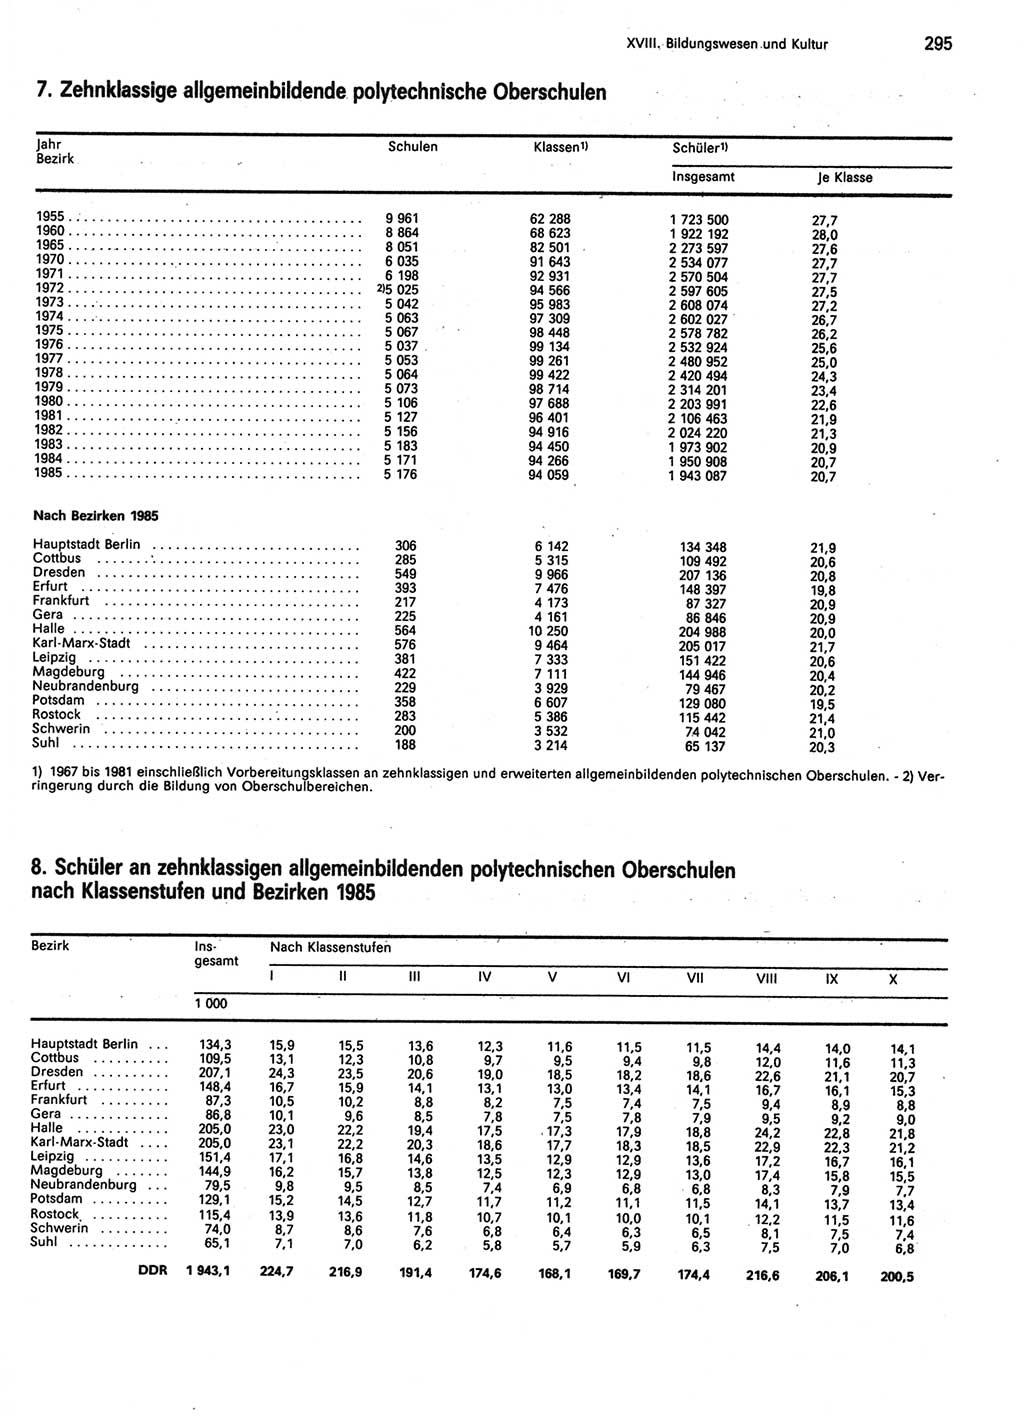 Statistisches Jahrbuch der Deutschen Demokratischen Republik (DDR) 1986, Seite 295 (Stat. Jb. DDR 1986, S. 295)